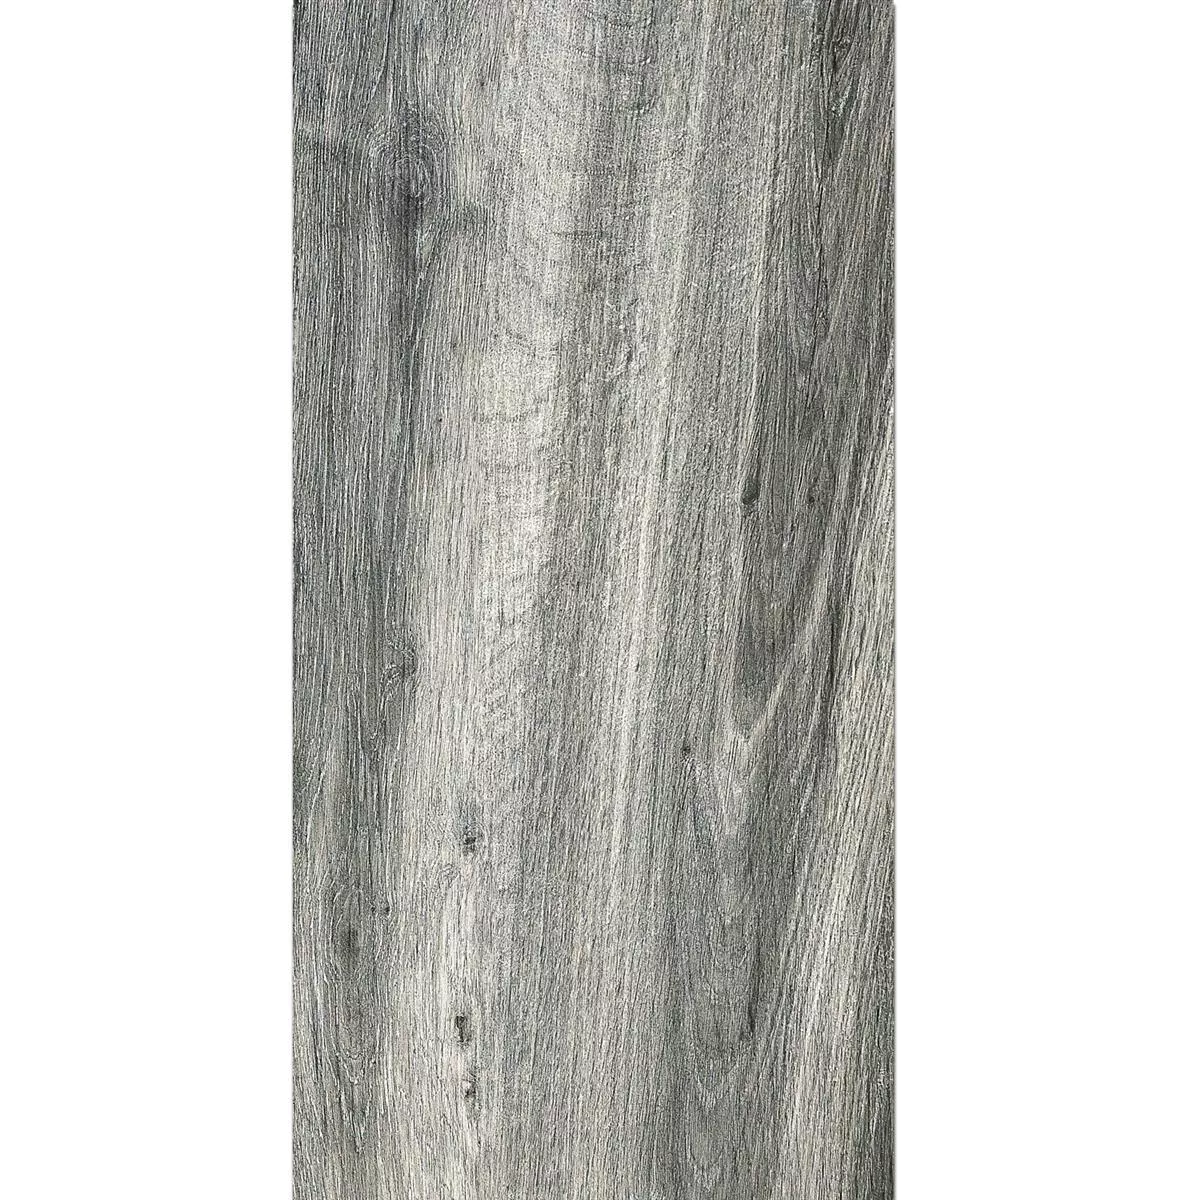 Vzorek Terasové Desky Starwood Dřevěný Vzhled Grey 45x90cm